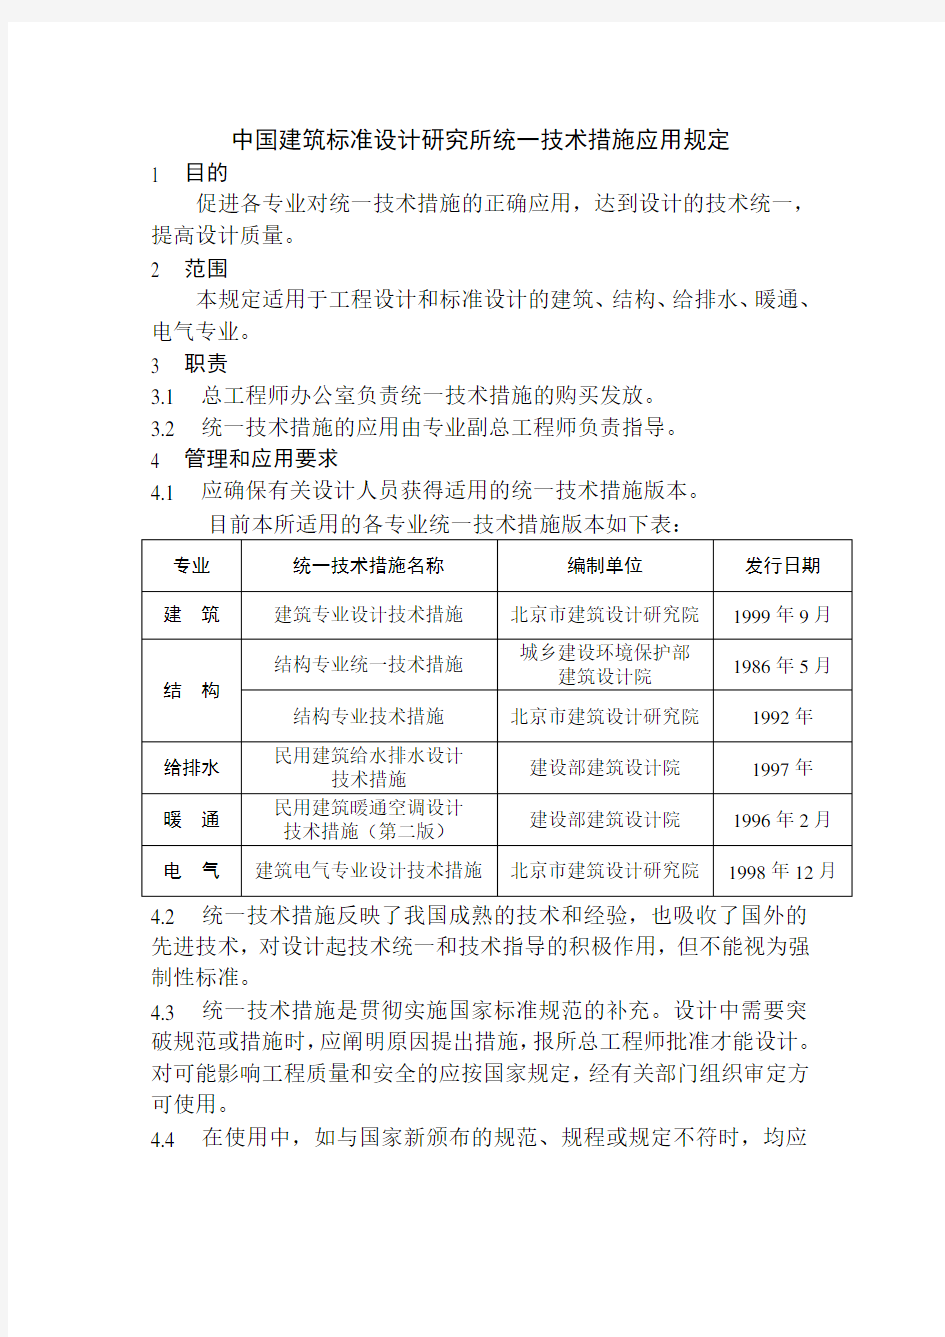 中国建筑标准设计研究所统一技术措施应用规定